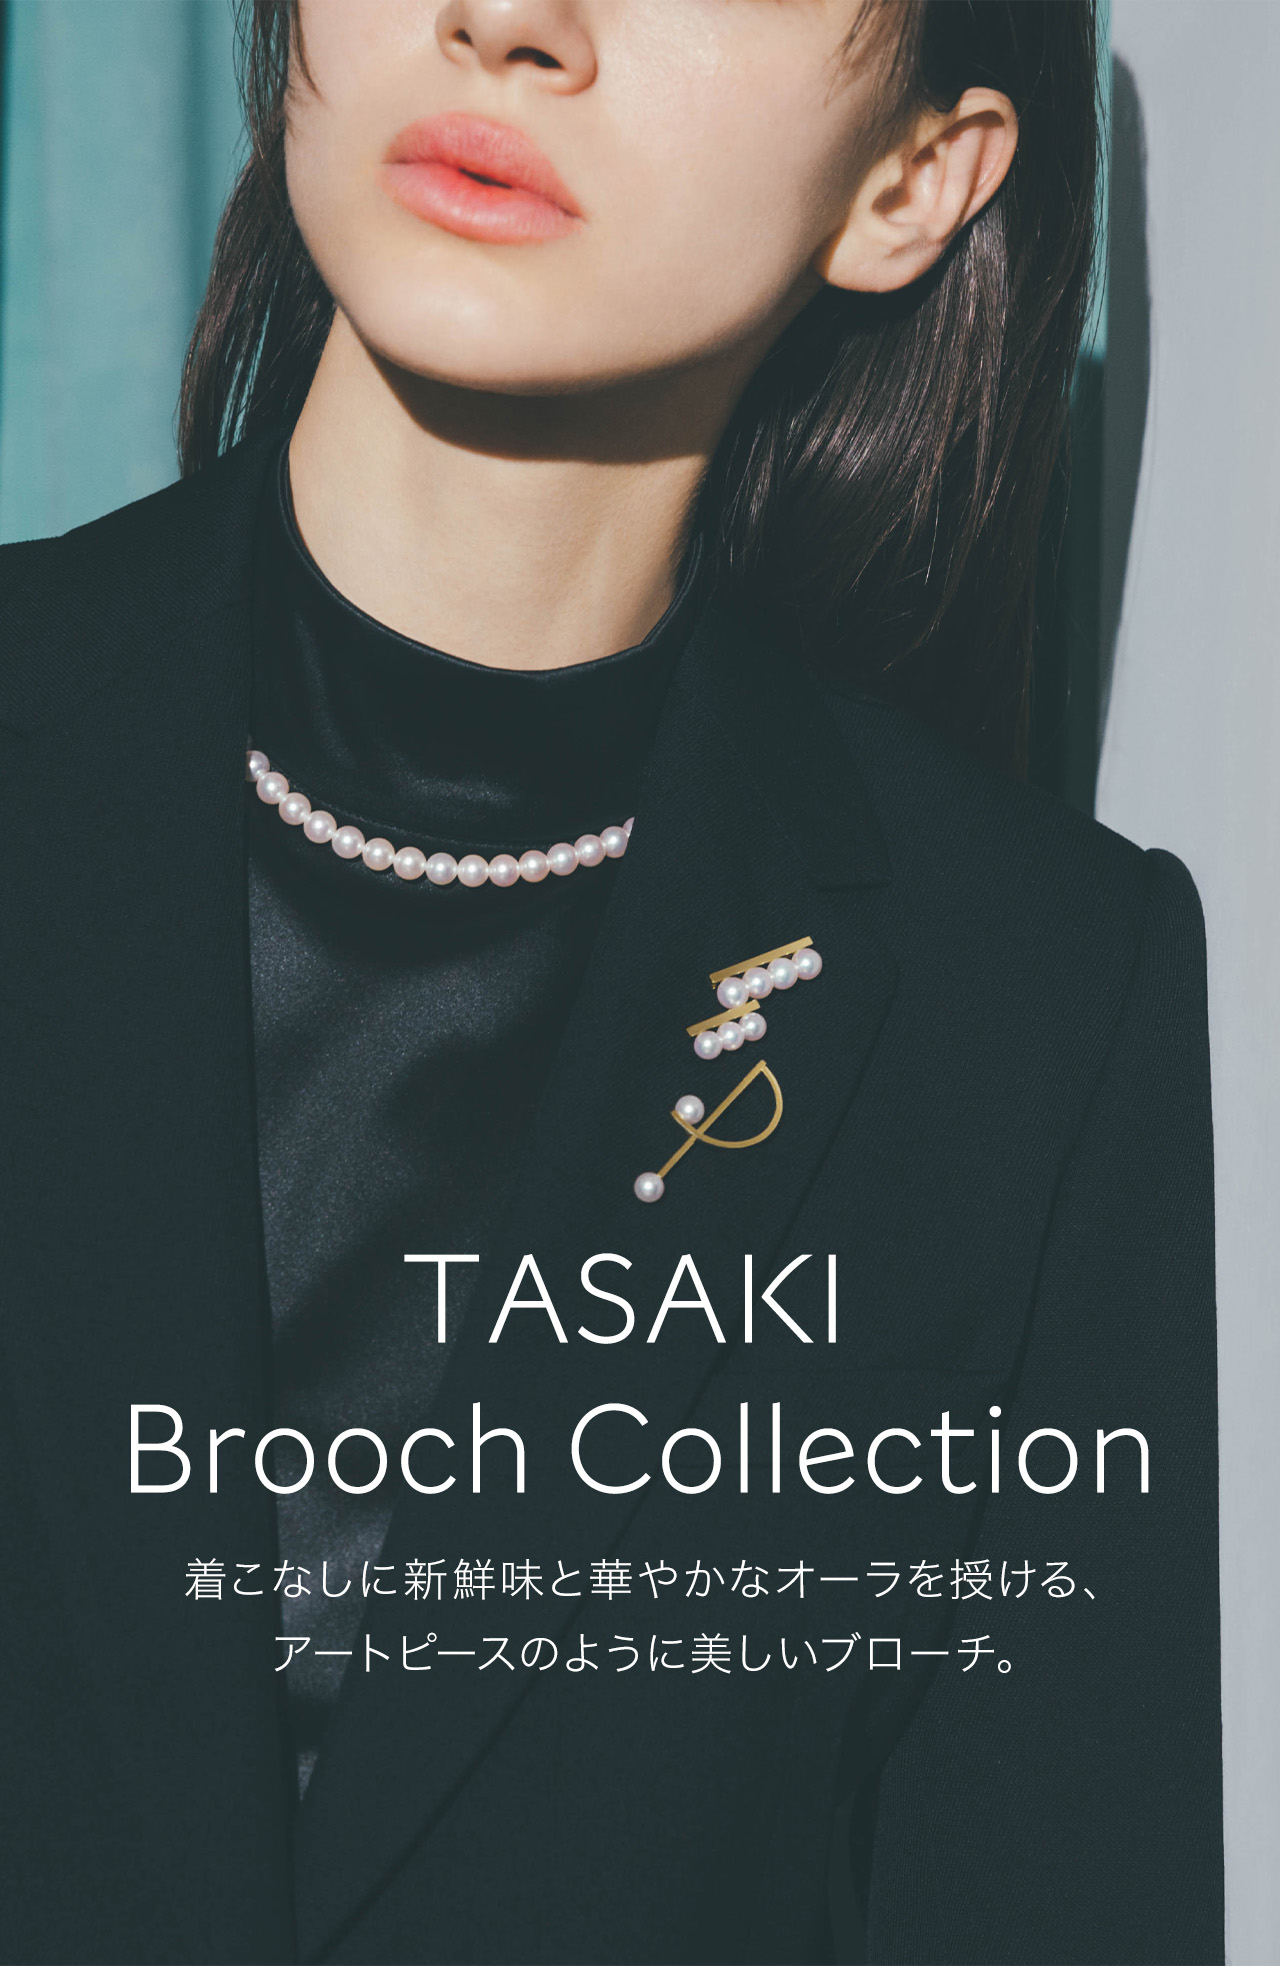 TASAKI(タサキ) 公式サイト | オンラインストア